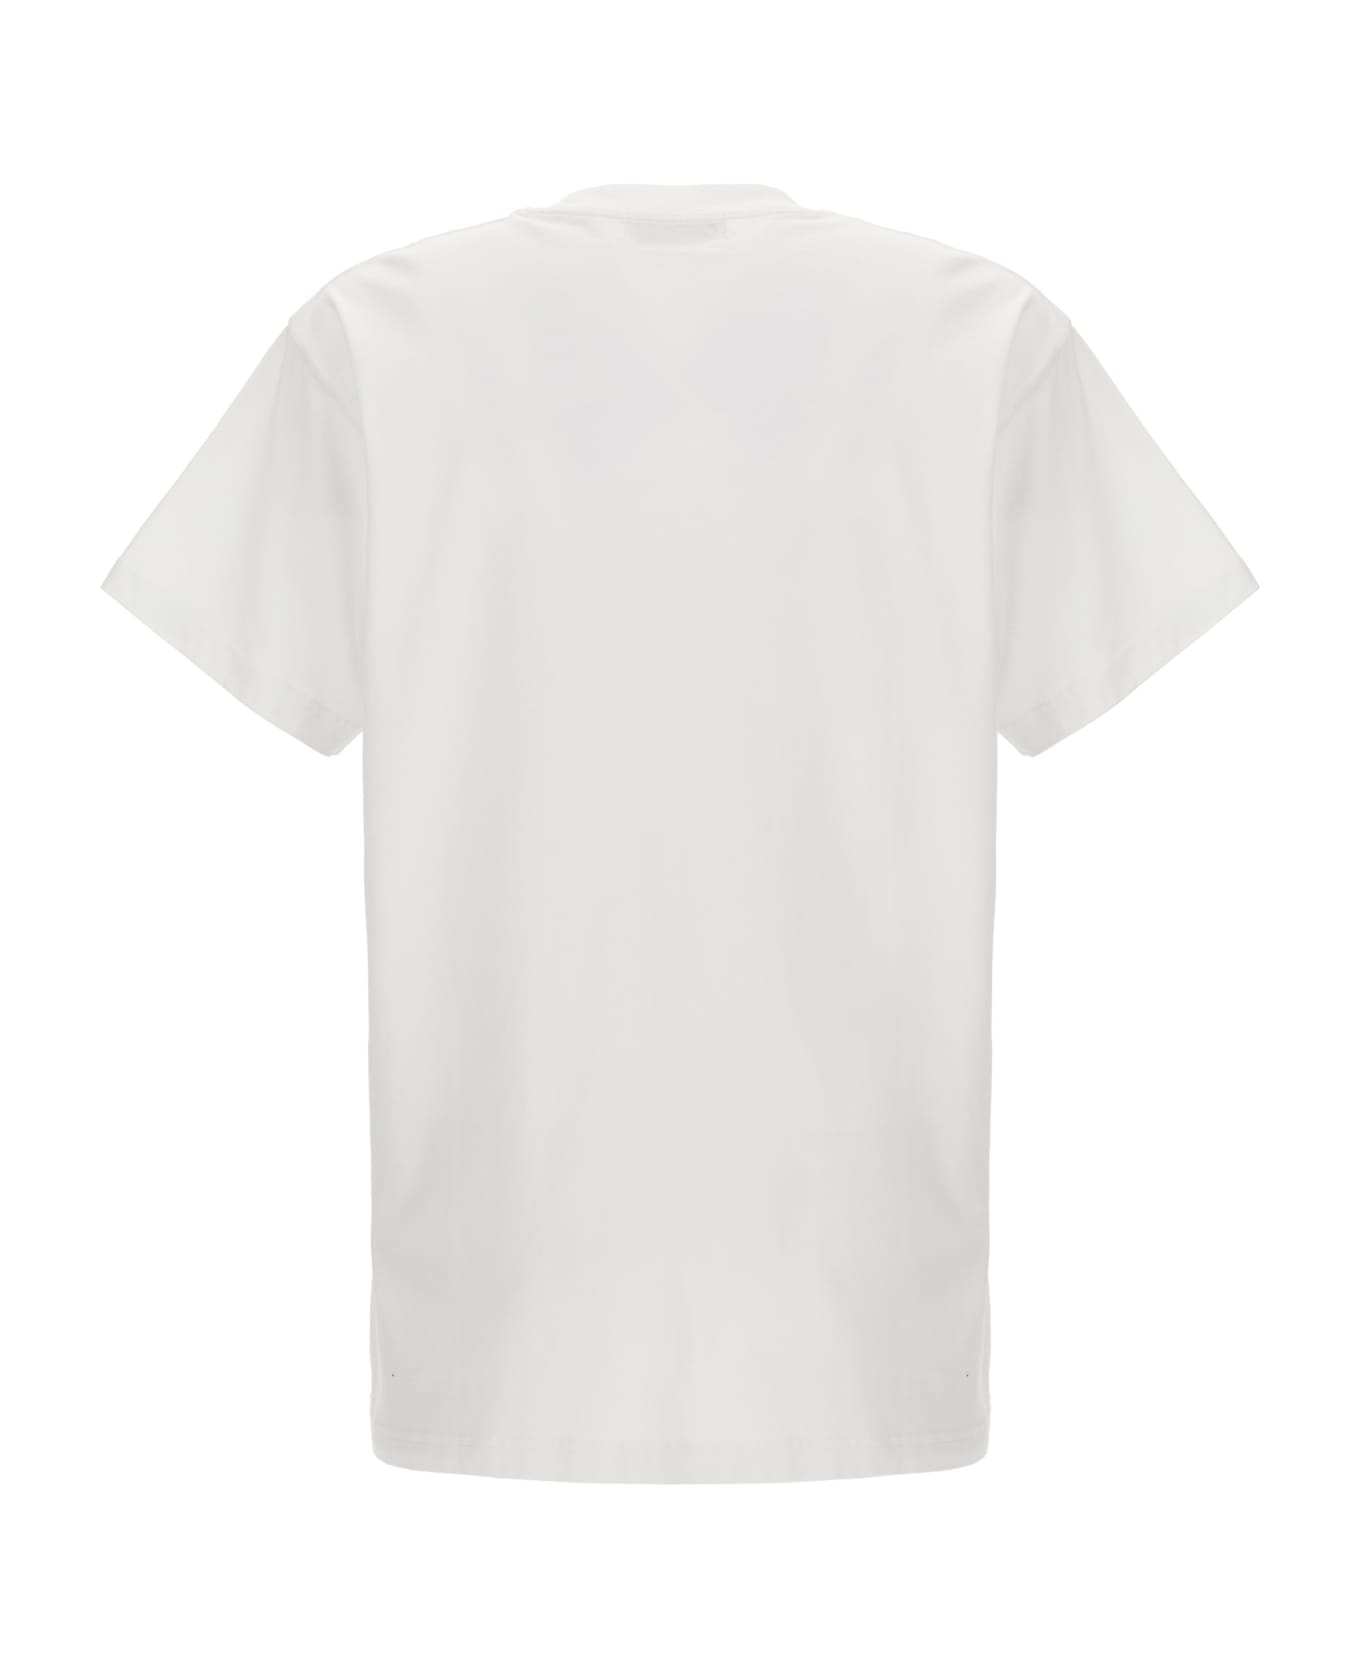 AMBUSH 3 Pack T-shirt - BLANC DE BLANC シャツ